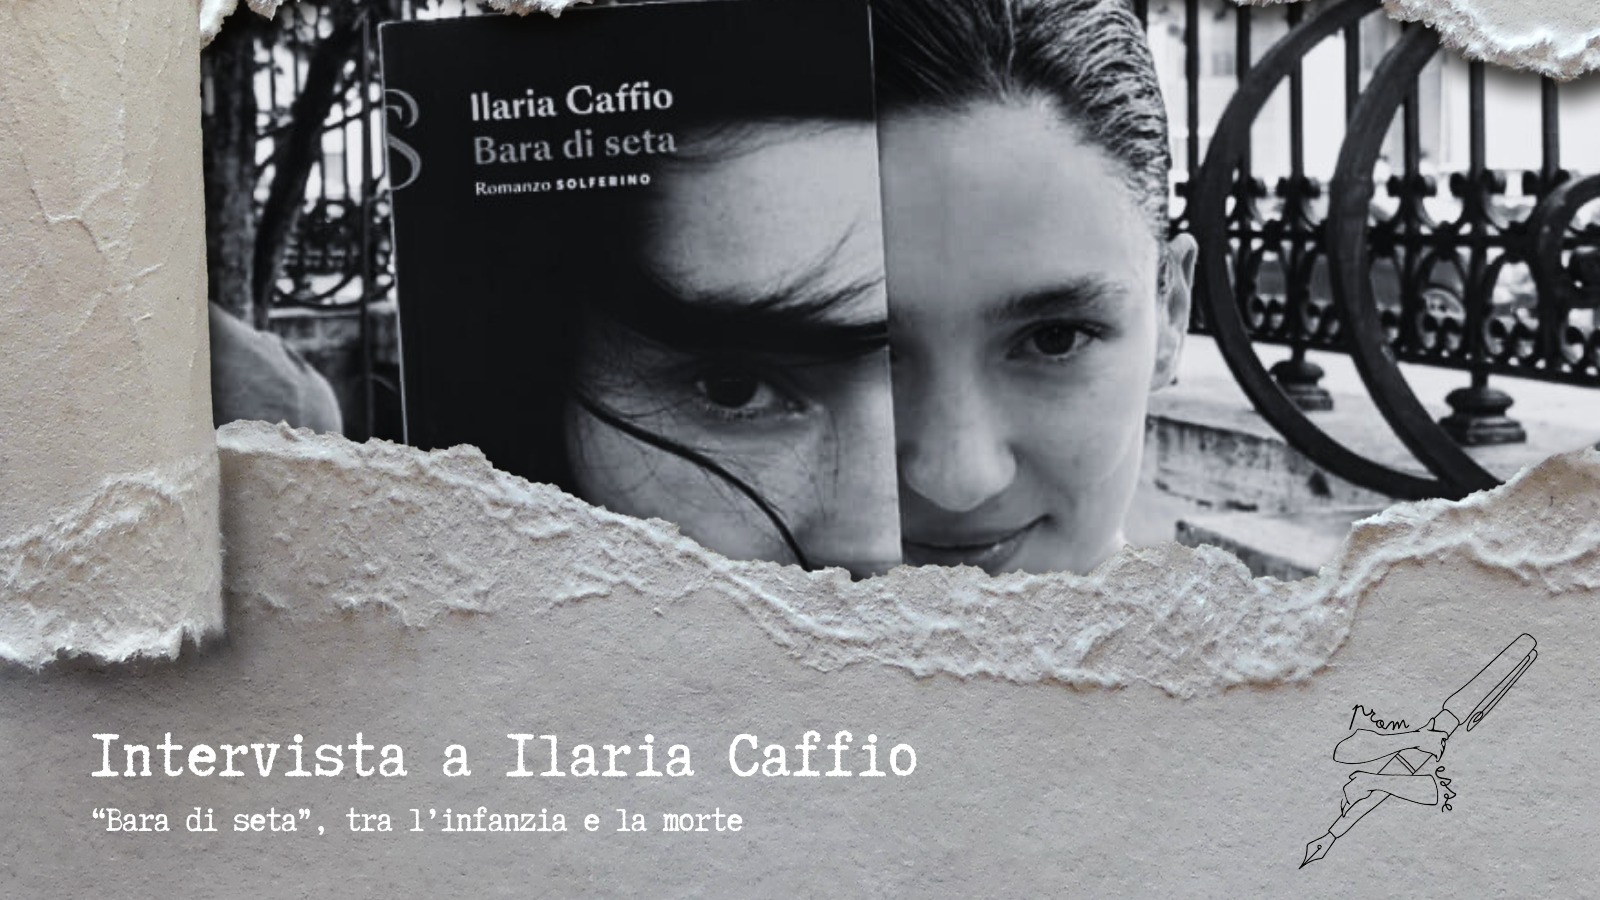 Intervista a Ilaria Caffio, “Bara di seta” tra l’infanzia e la morte